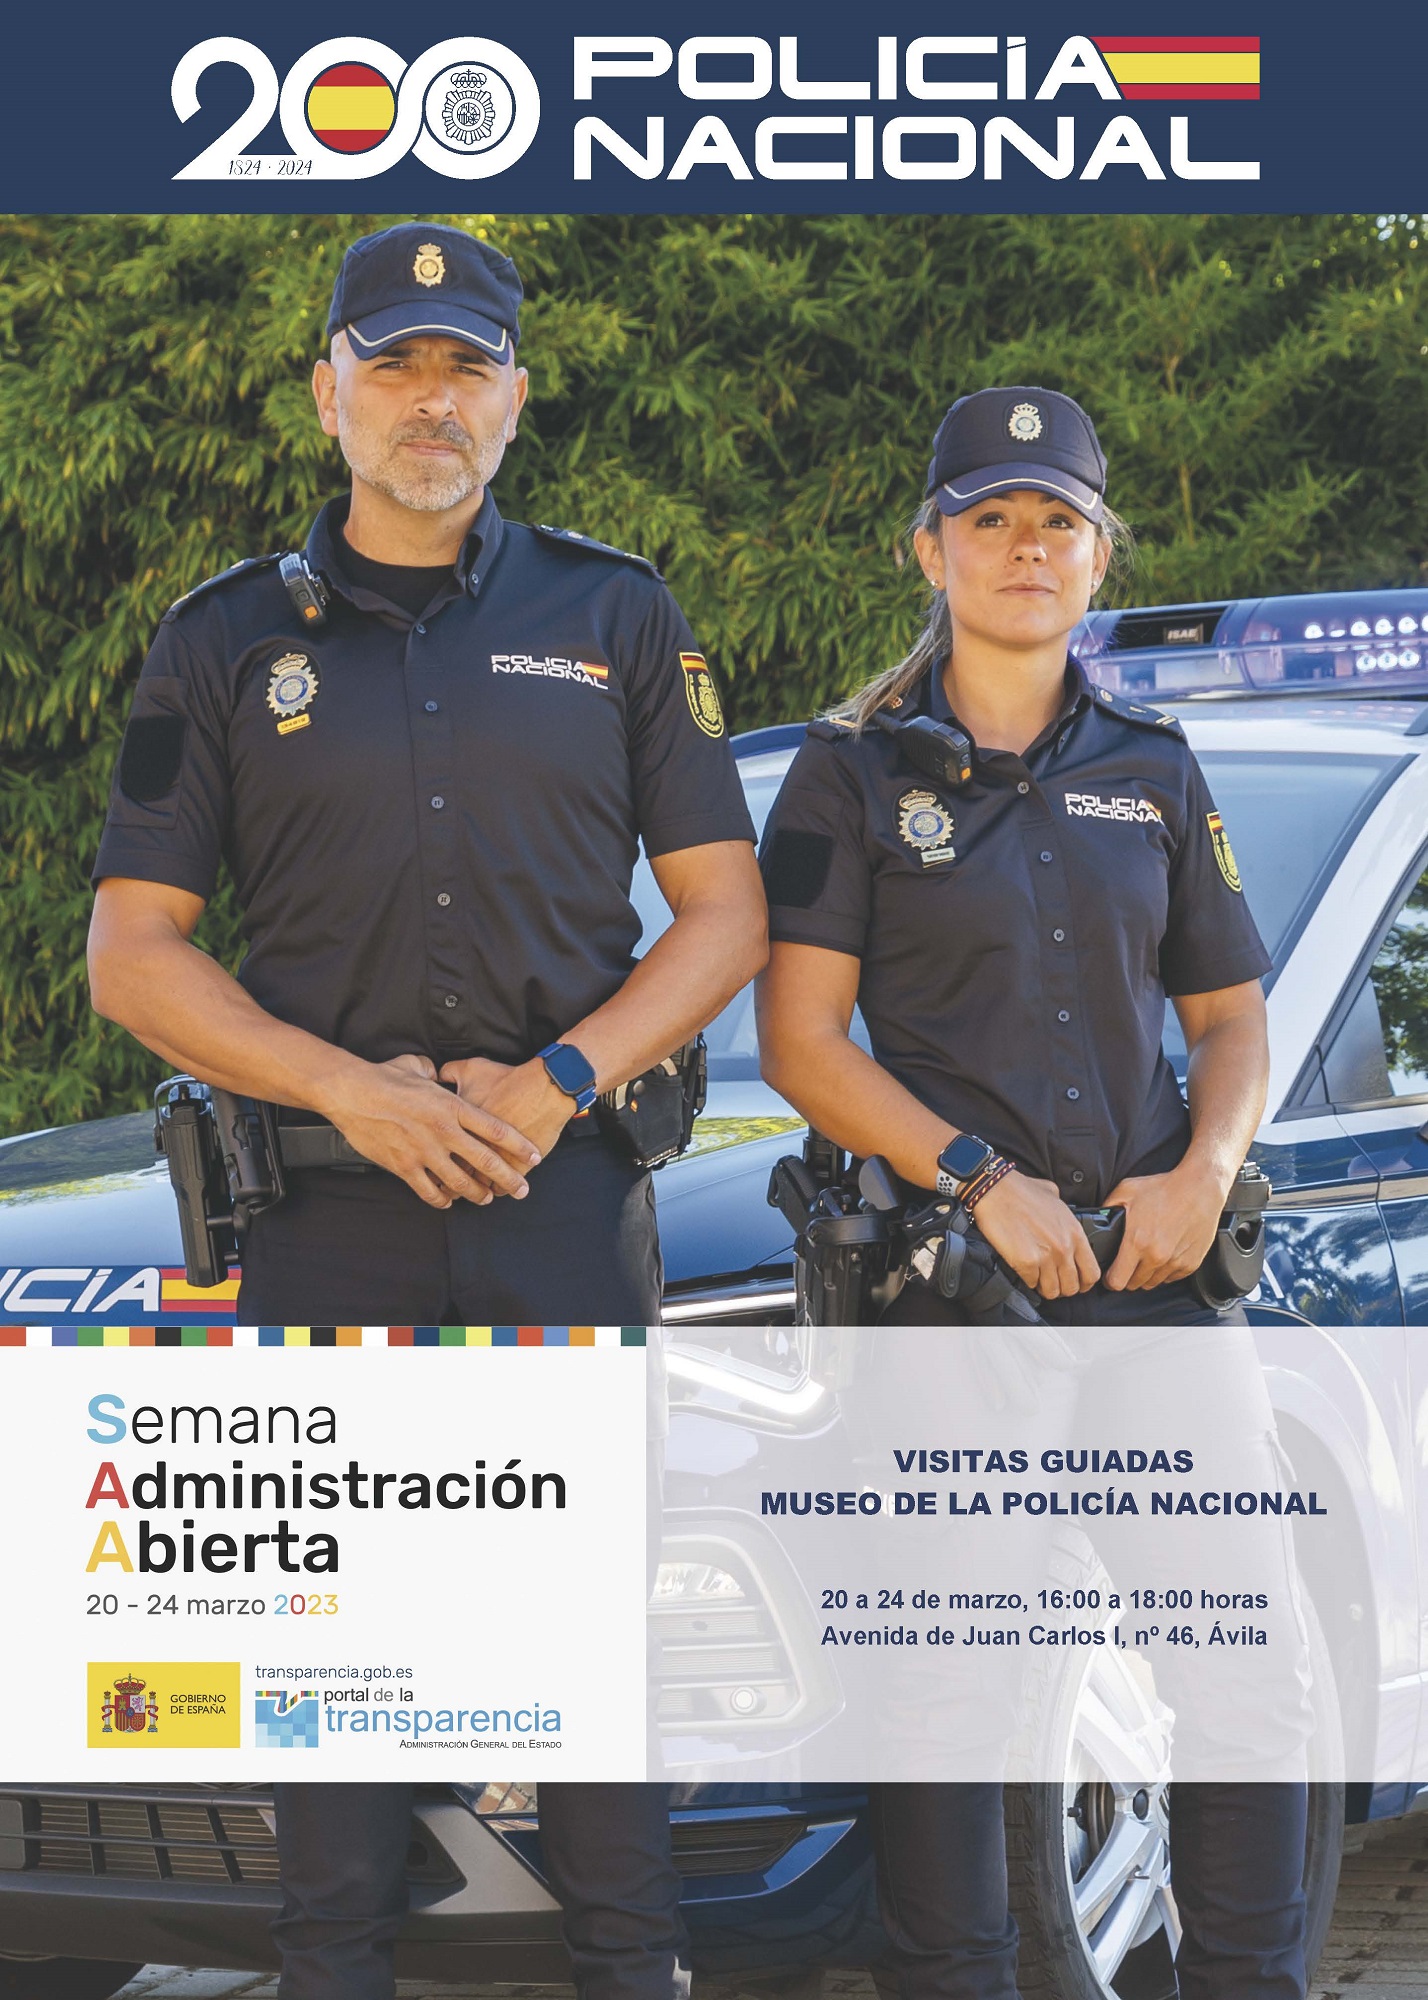 Cartel de visitas guiadas al Museo de la Policía Nacional en la Escuela Nacional de Policía de Ávila.